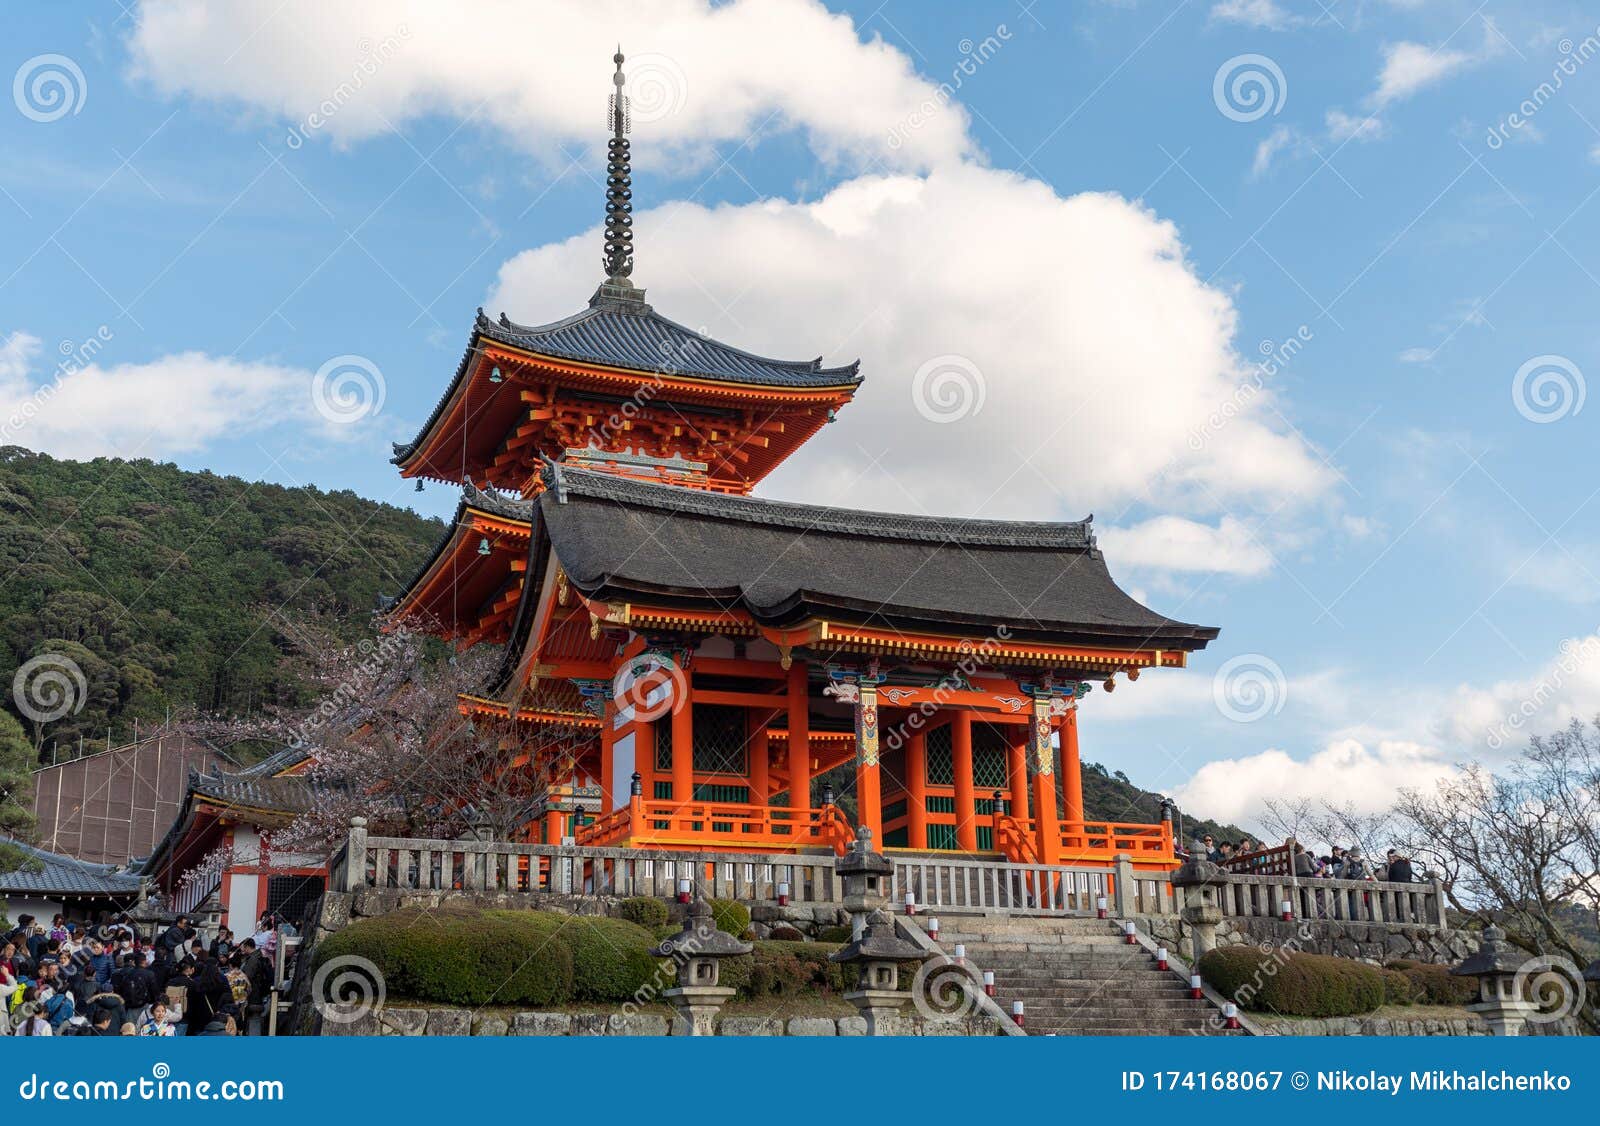 日本京都清水寺图库摄影片 图片包括有日本之神道教 街道 都市风景 有历史 聚会所 风景